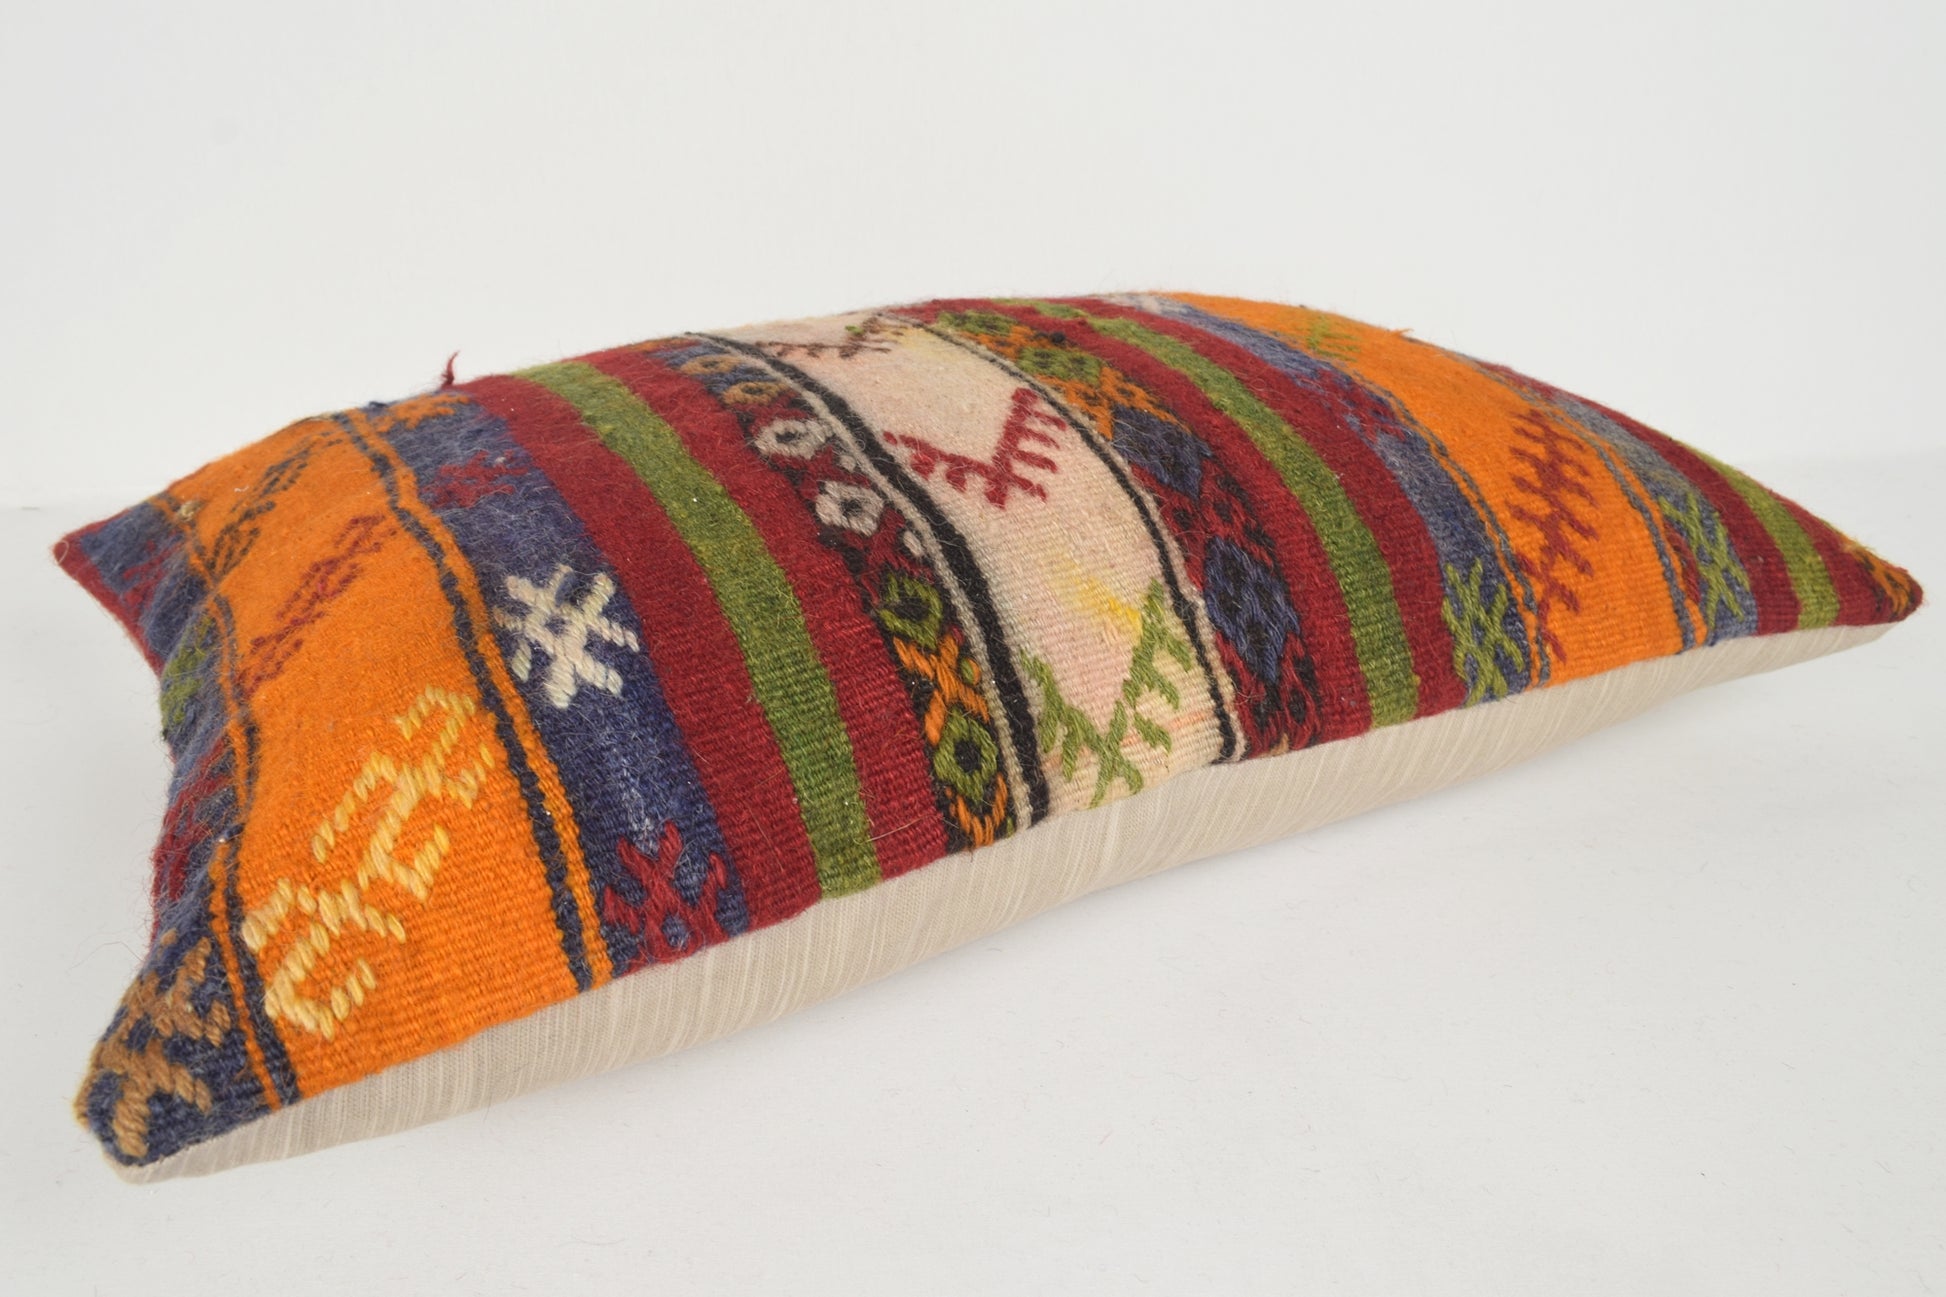 Turkey Cushion Covers 16x24 " 40x60 cm. E00631 Southwestern Print Pillows